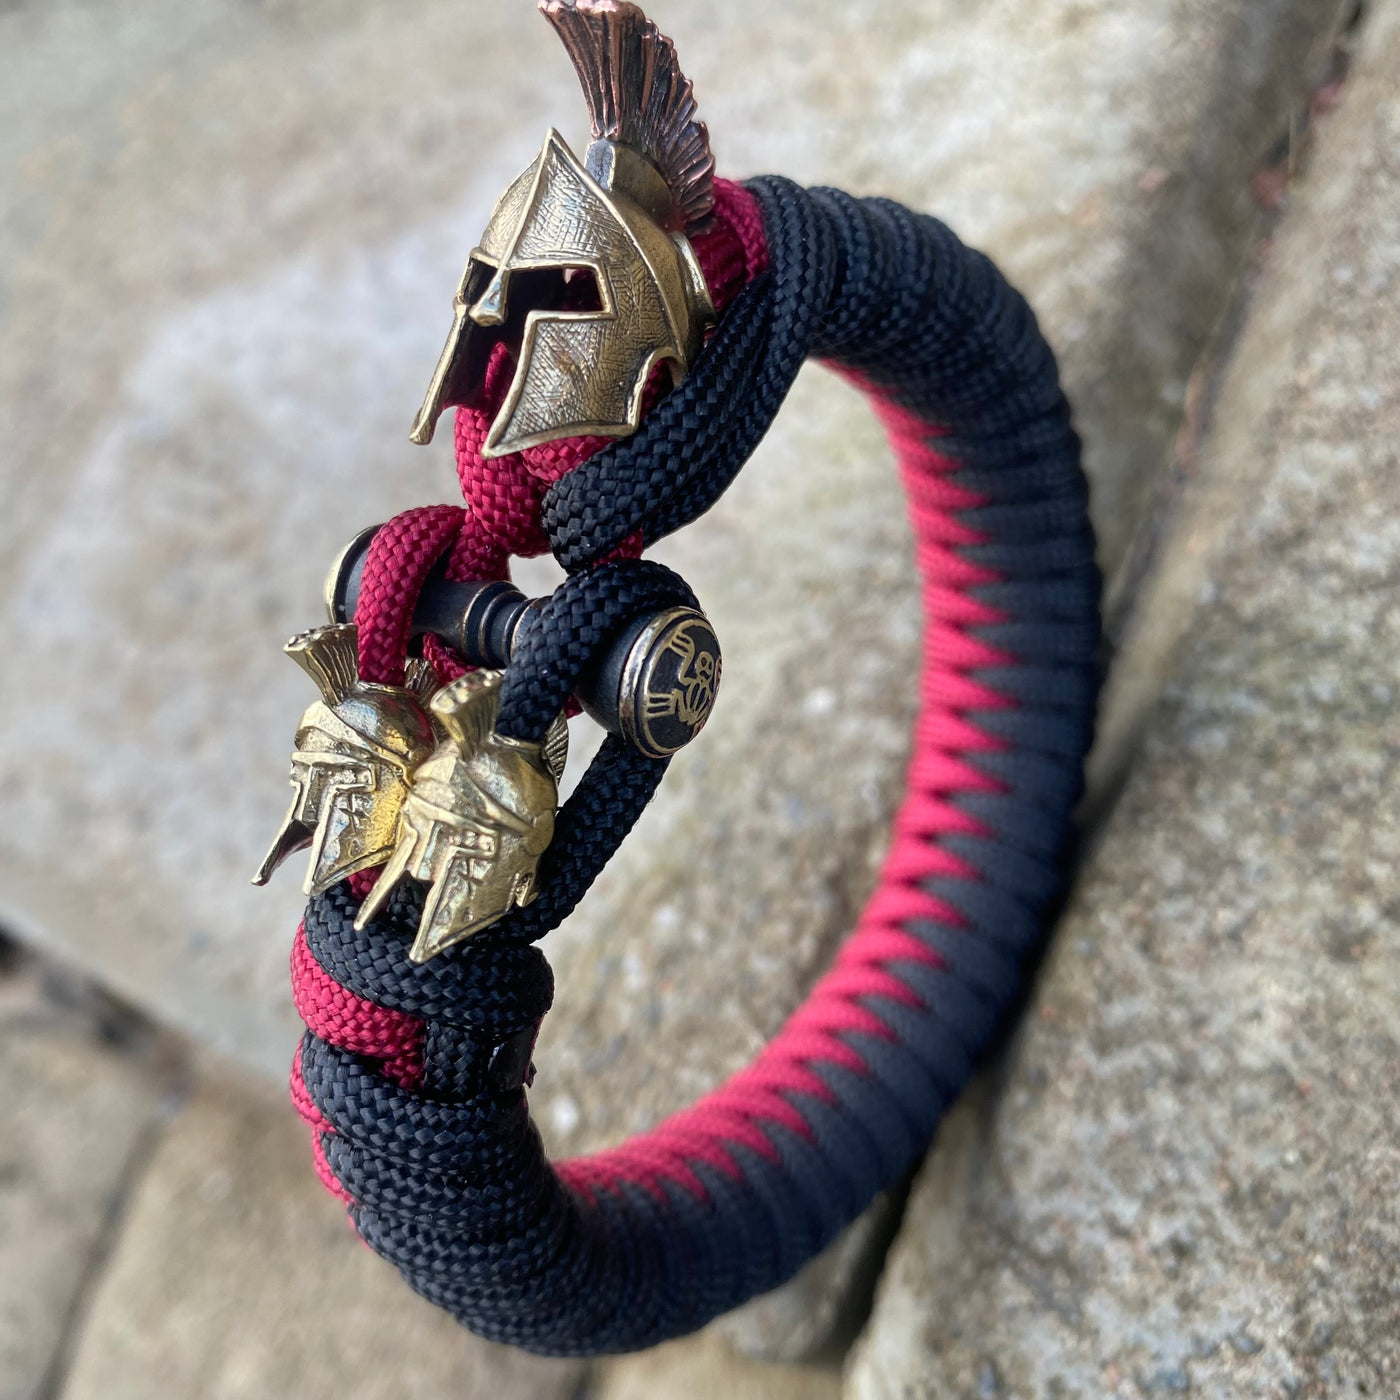 Elite Spartan paracord bracelets